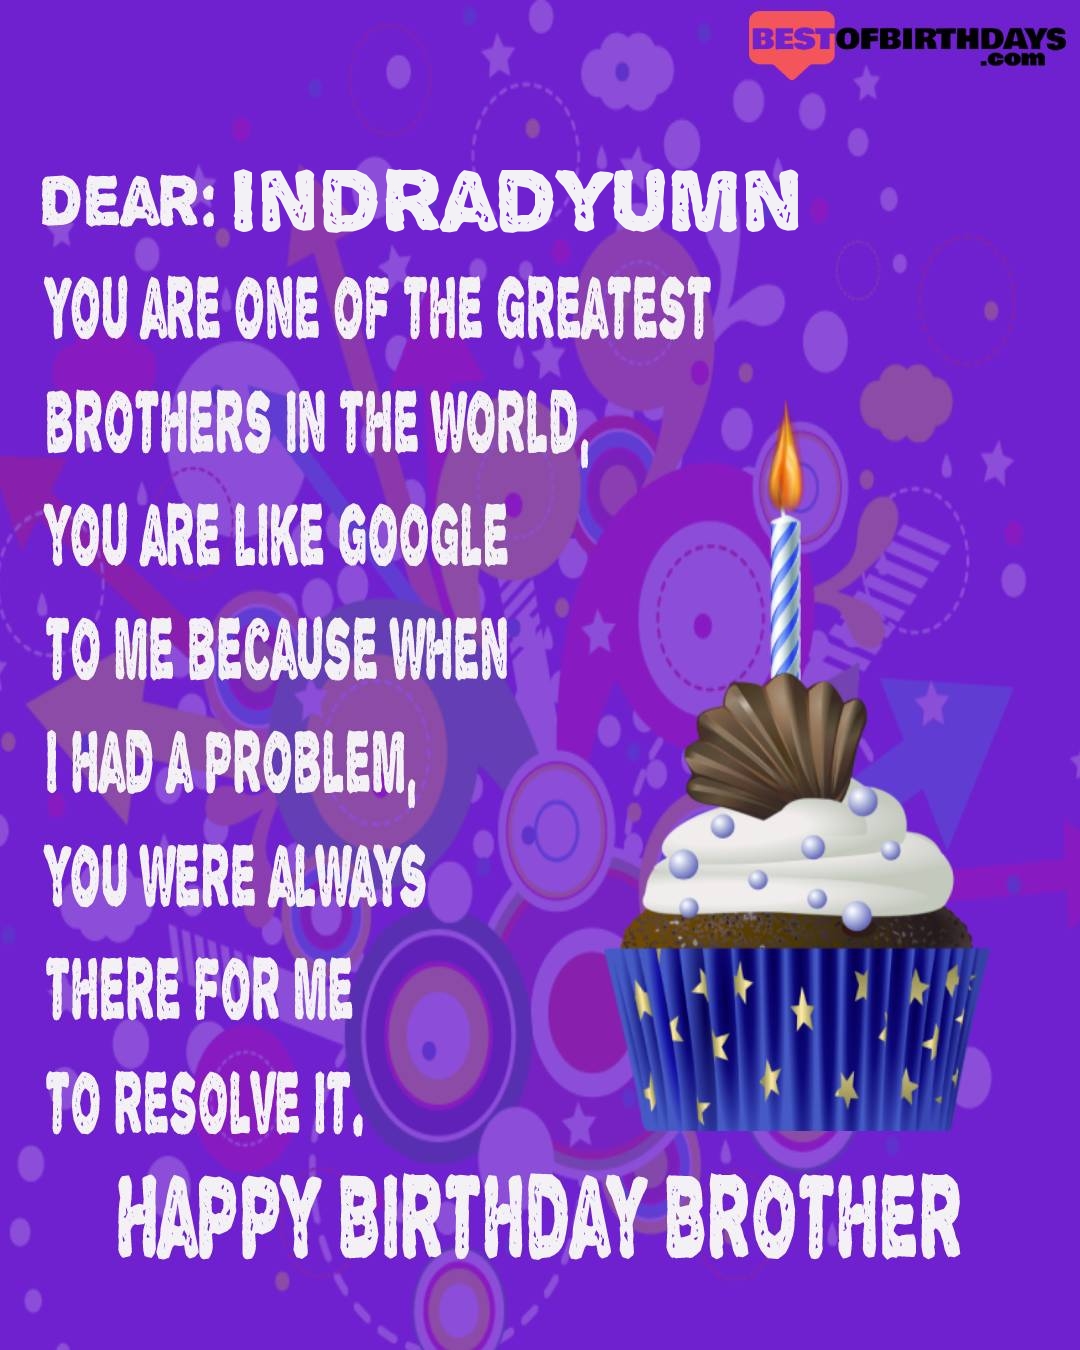 Happy birthday indradyumn bhai brother bro